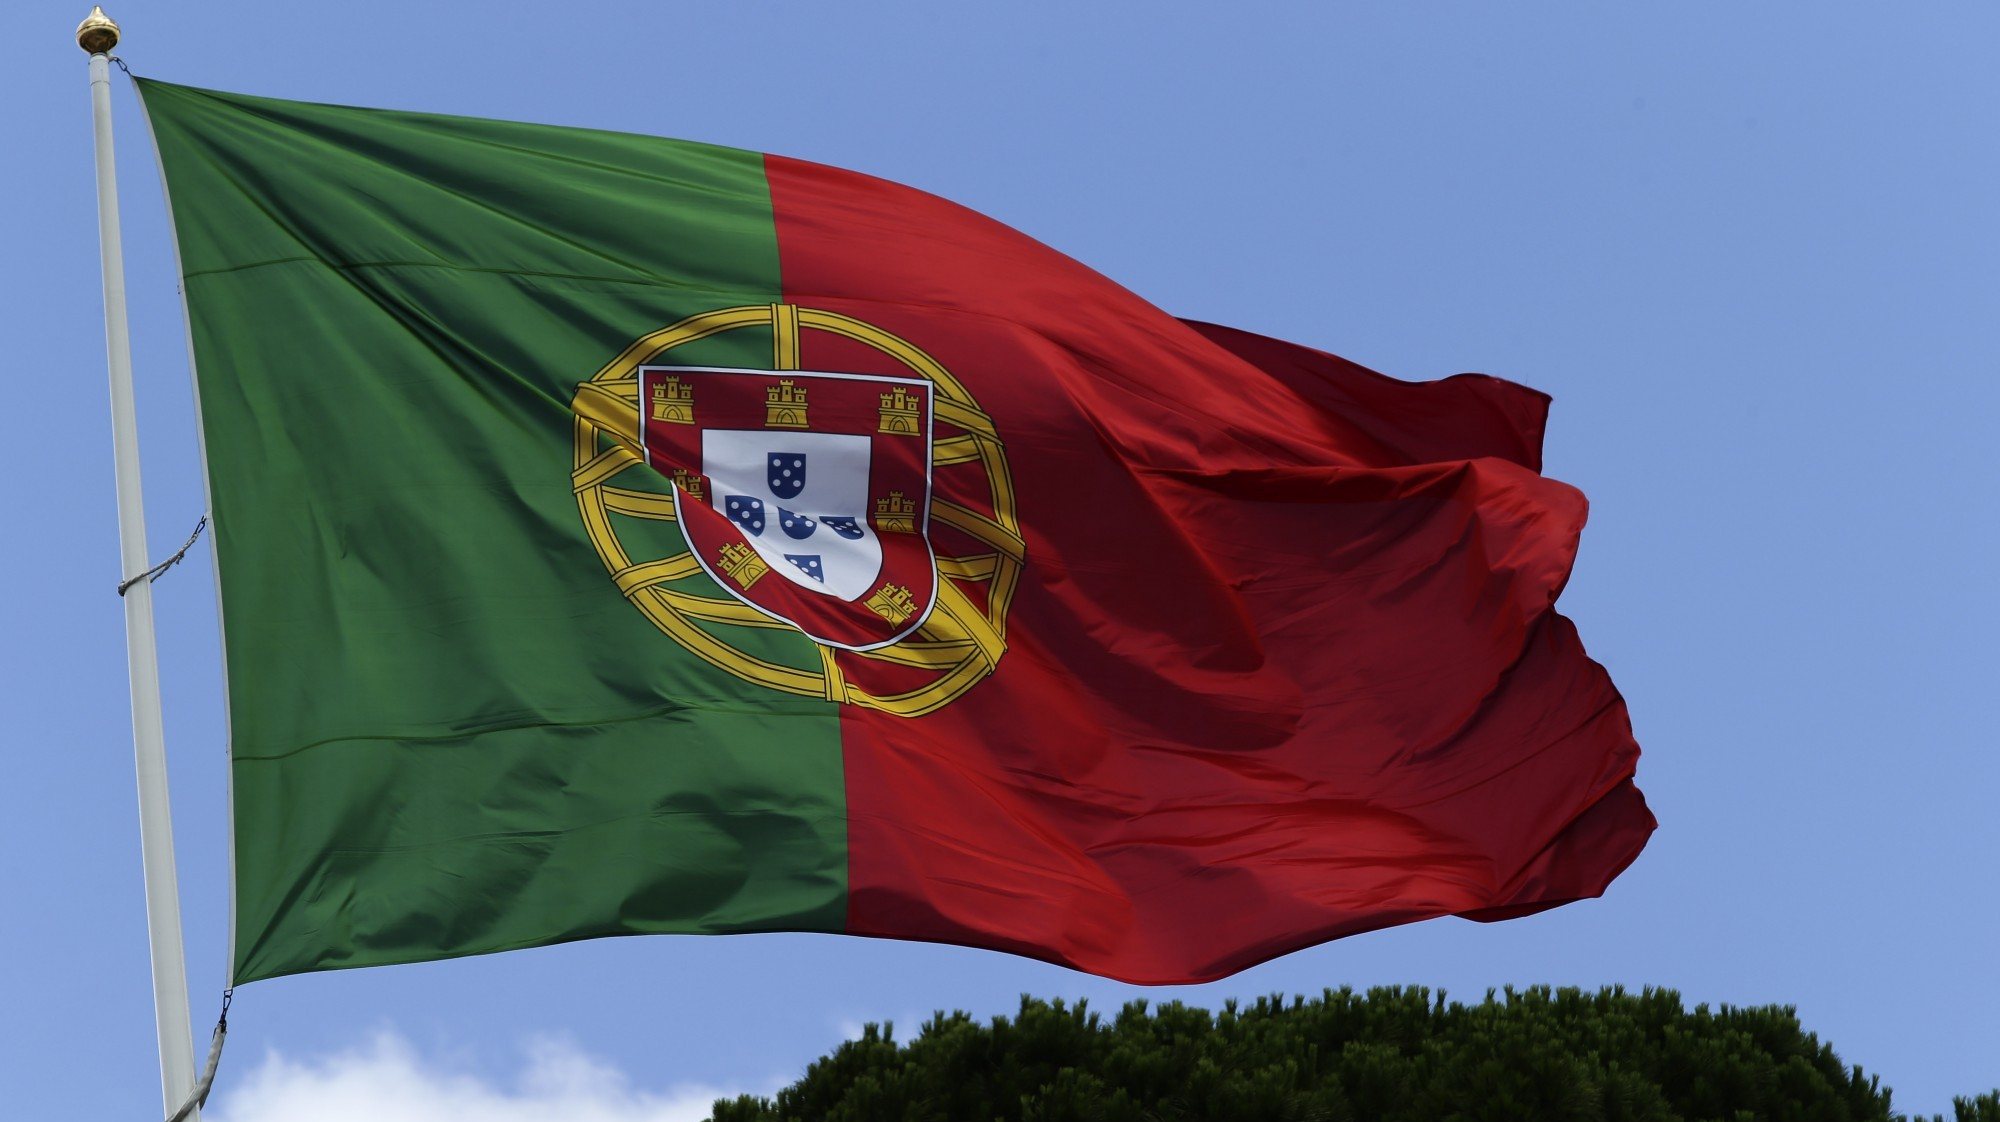 Bandeira de Portugal hasteada no Palácio de Belém, lisboa, 02 de julho de 2014. ANTÓNIO COTRIM/LUSA